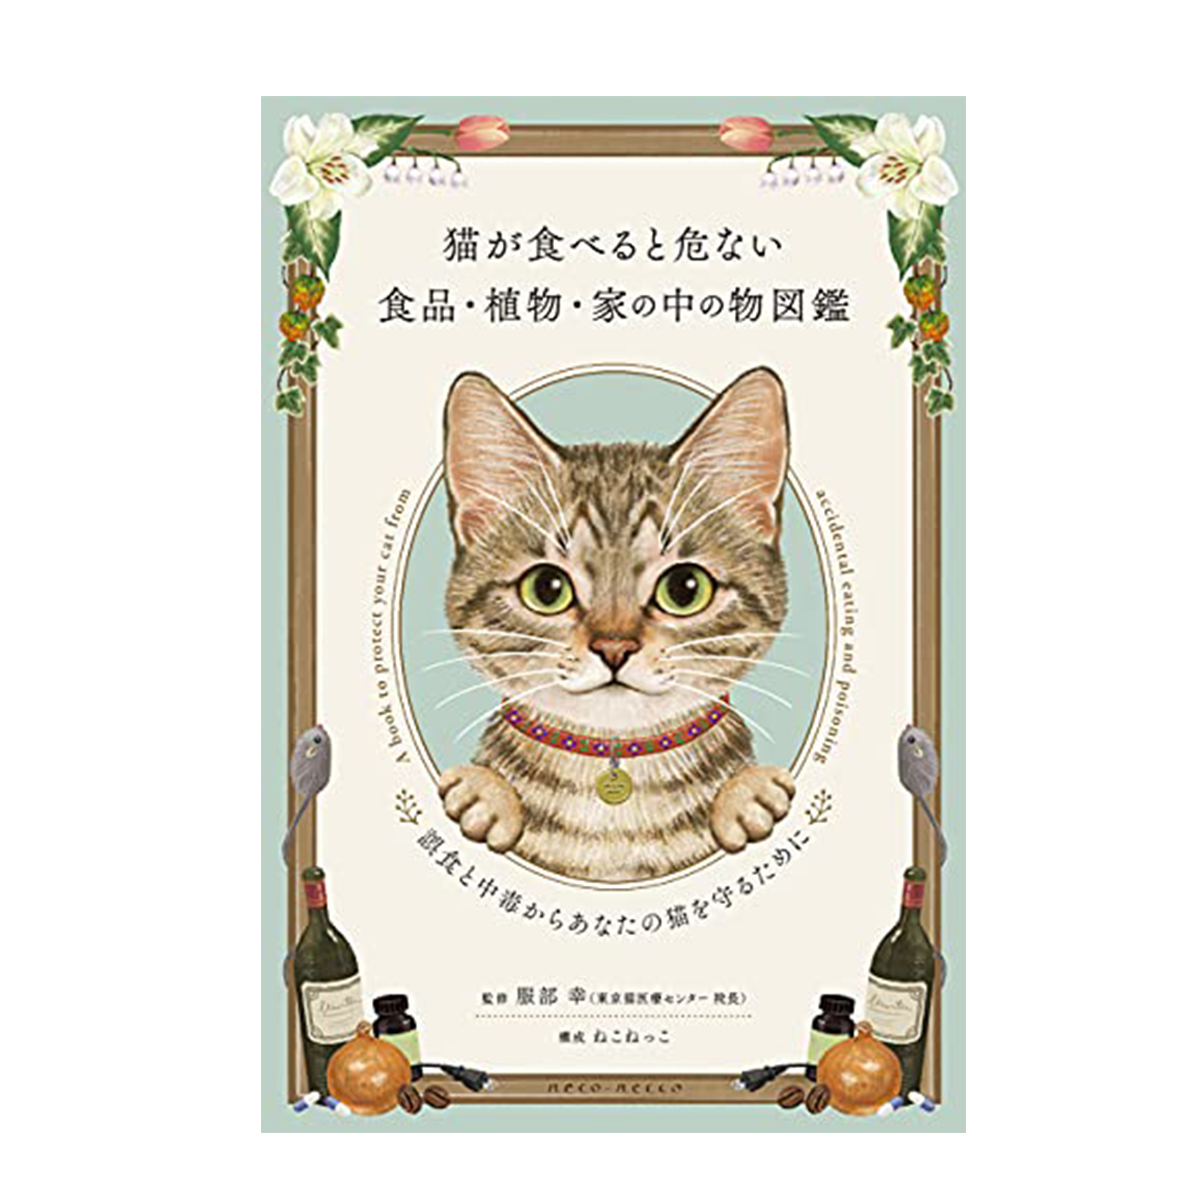 猫が食べると危ない食品・植物・家の中の物図鑑 ~誤食と中毒からあなたの猫を守るために 画像